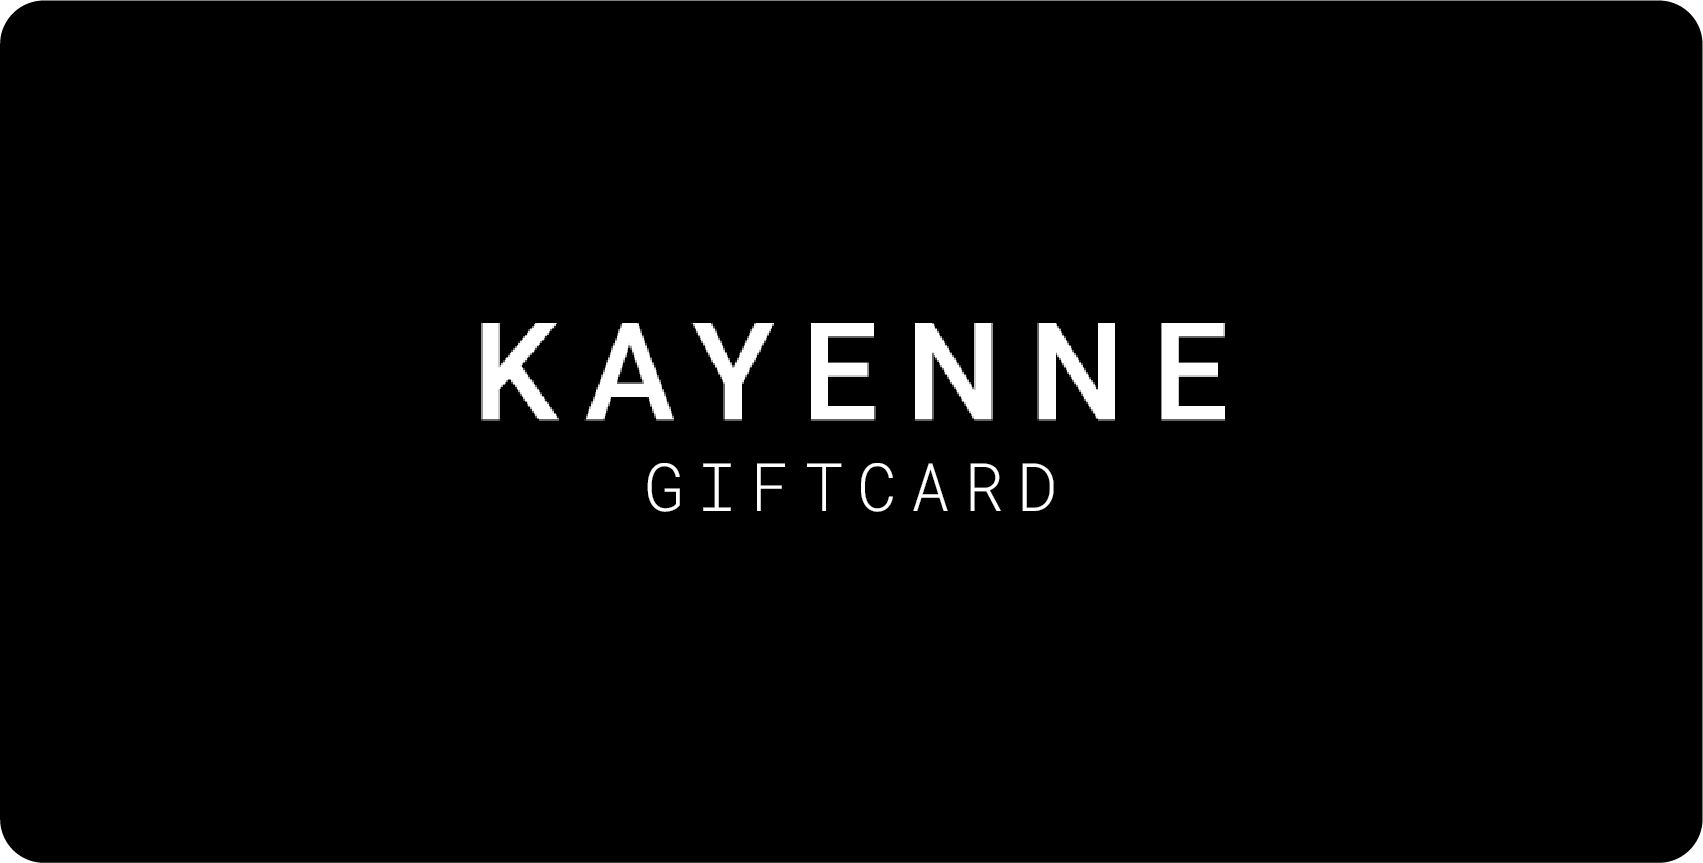 Kayenne Gift Card